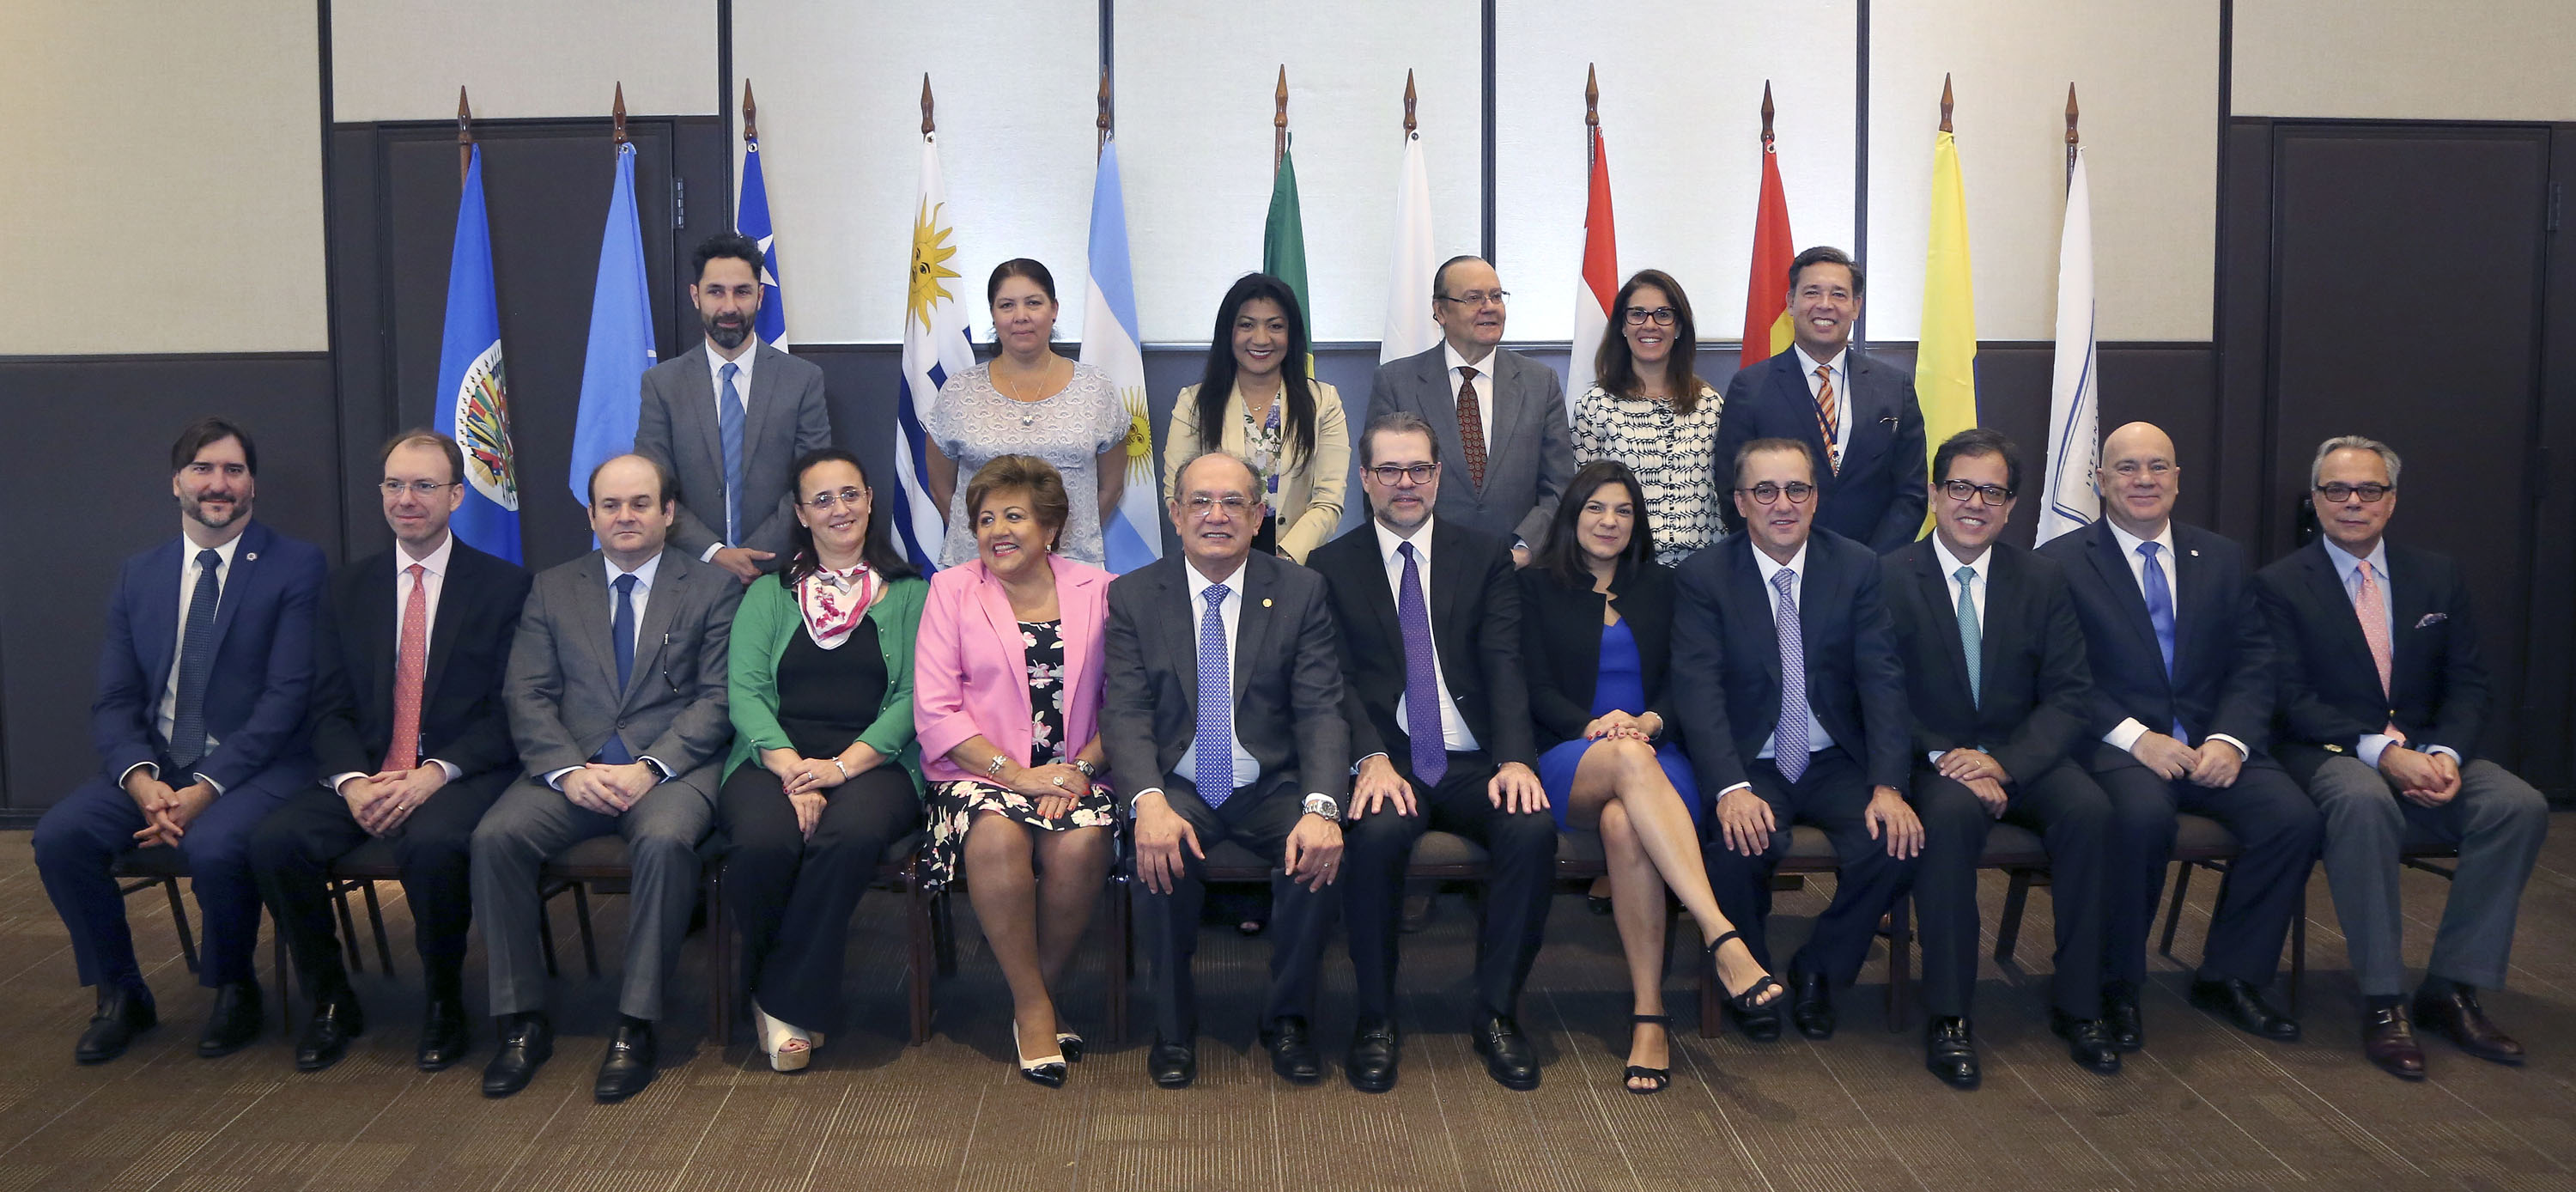 Dr Daniel Zovatto, Director Regional para América Latina y el Caribe de IDEA Internacional (derecha sentado); junto a representantes de los Órganos Electorales del MERCOSUR; ONU; Human Rights Watch; OEA y otros expertos internacionales.